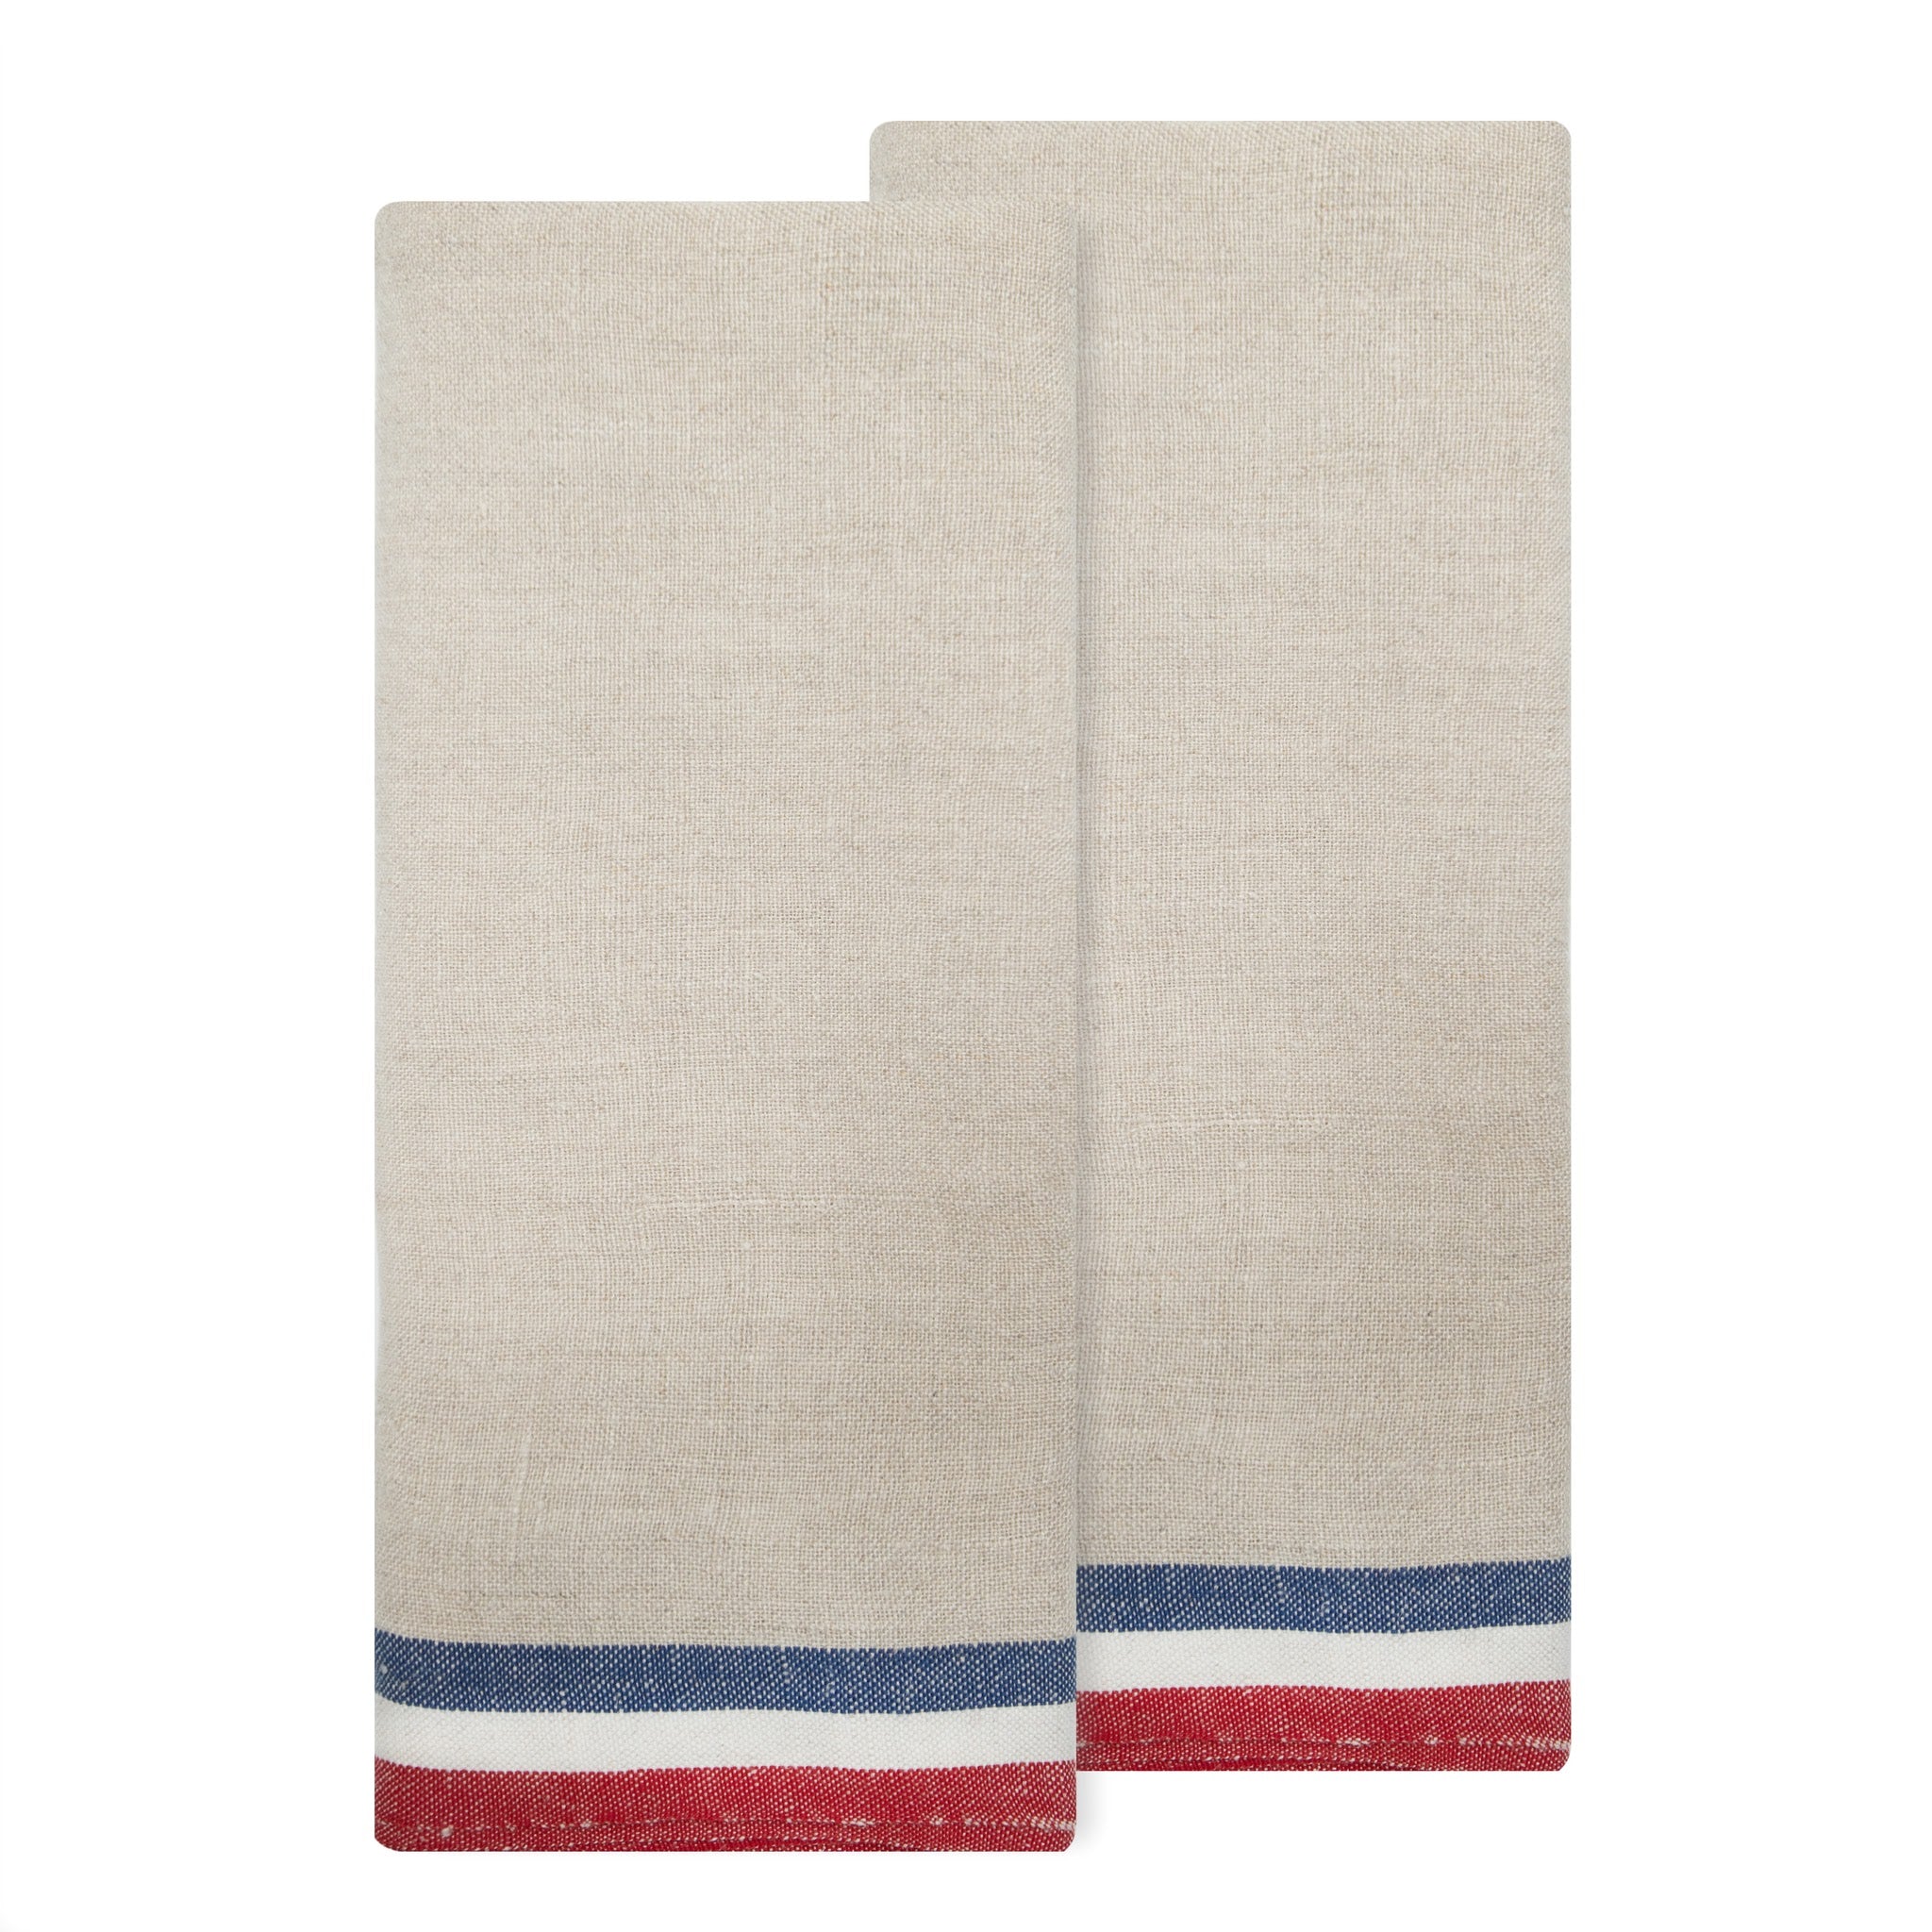 Normandy Natural - Tea Towels 20x30 - Set of 2